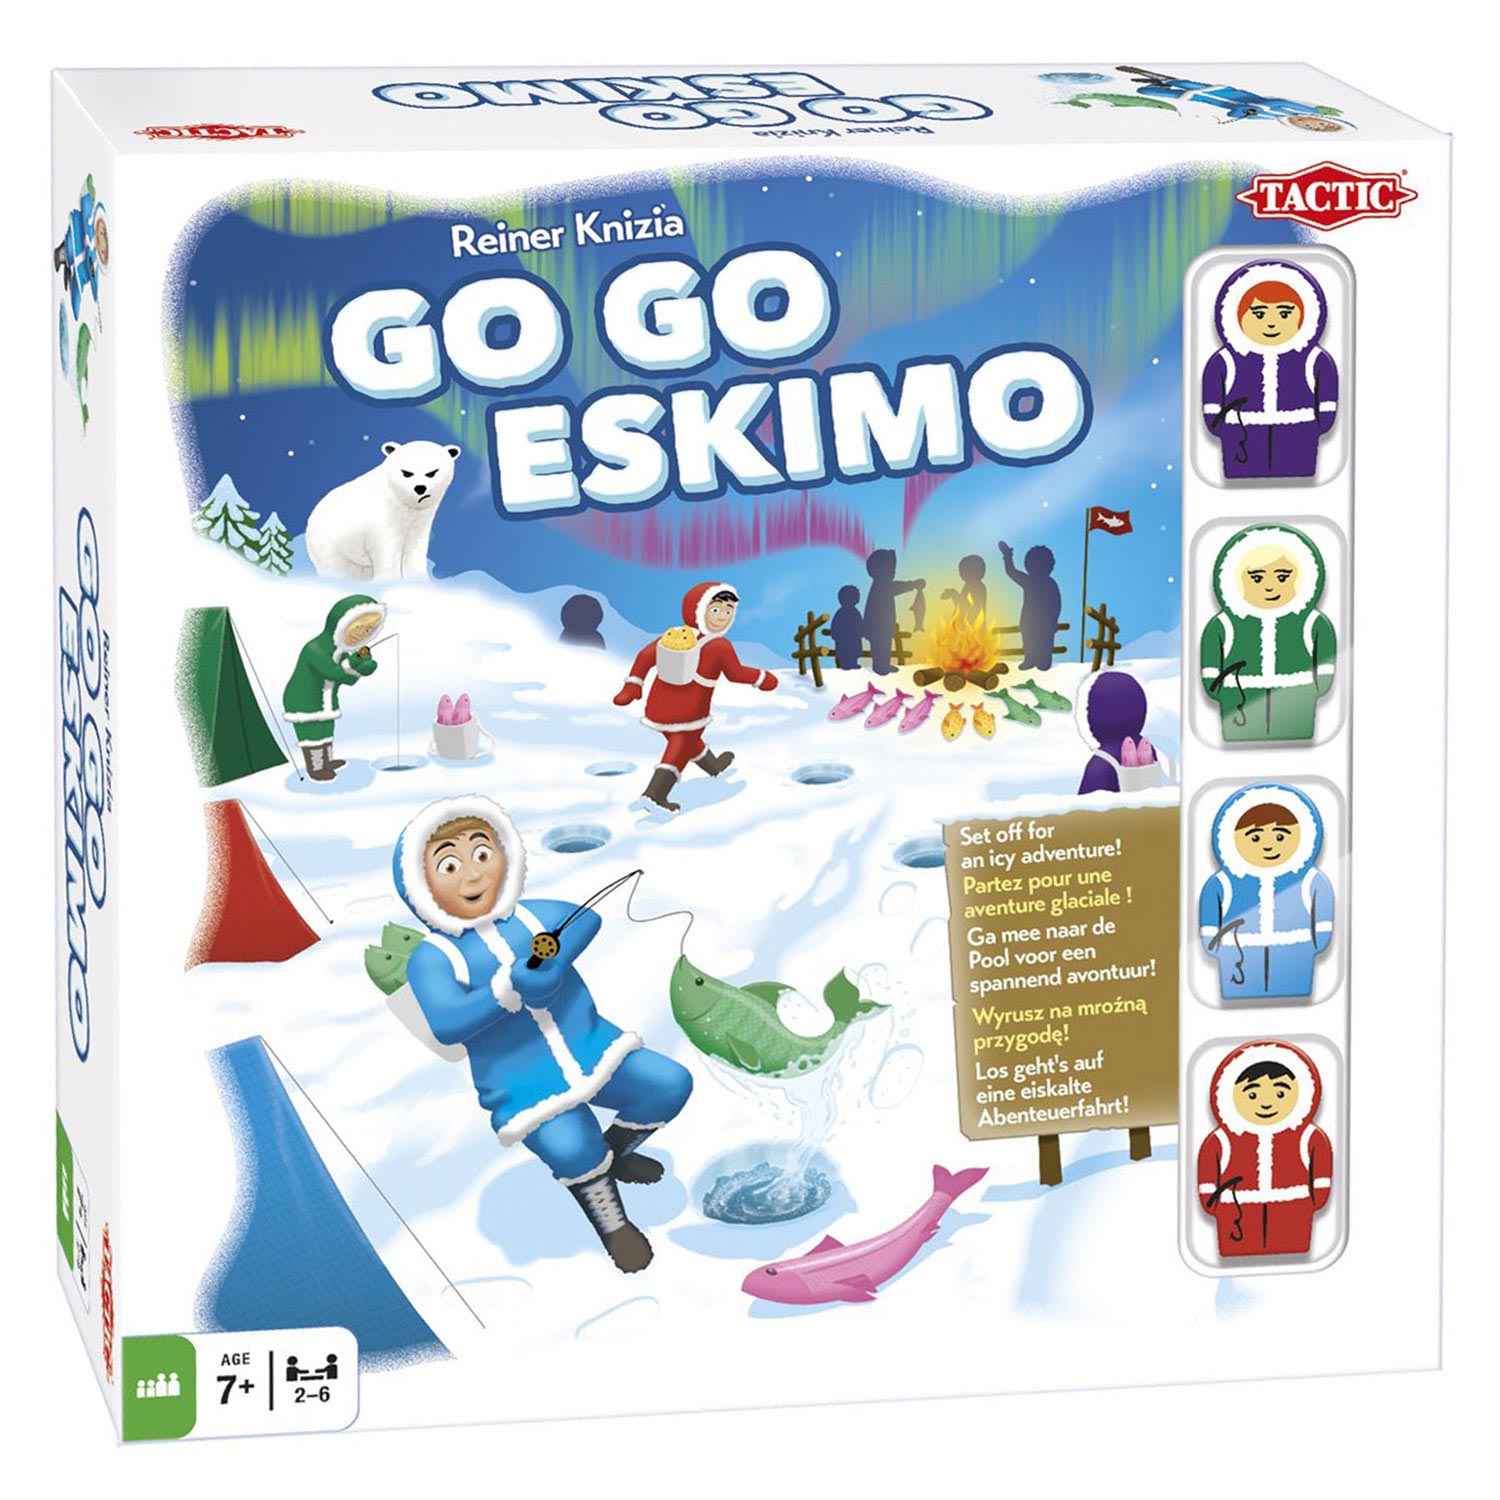 Go Go Eskimo